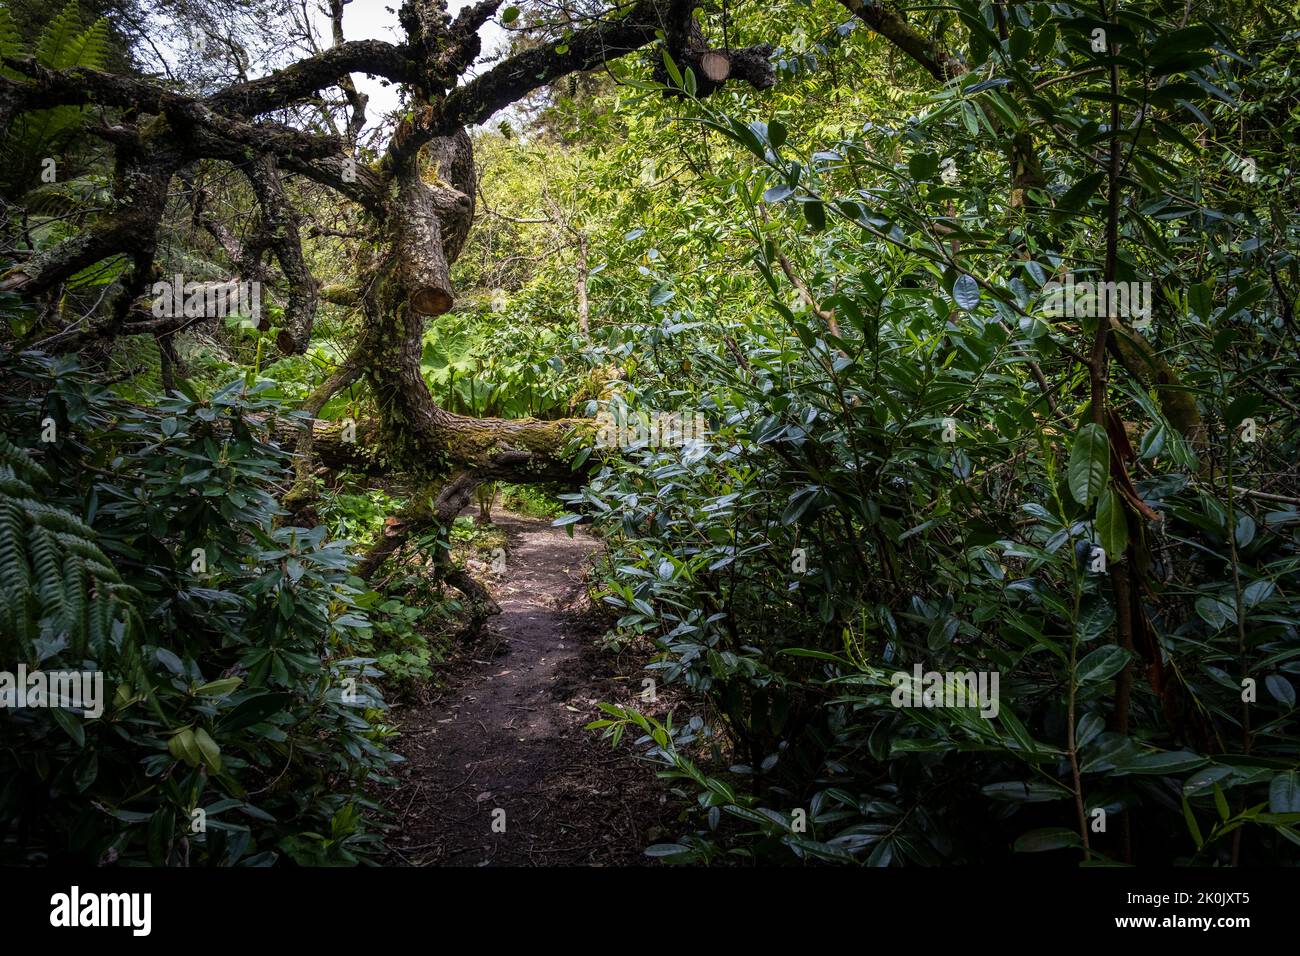 Un arbre est tombé sur un sentier dans le jardin sauvage subtropical Penjjick à Cornwall. Penjerrick Garden est reconnu comme le véritable jardin de la jungle de Cornmurals Banque D'Images